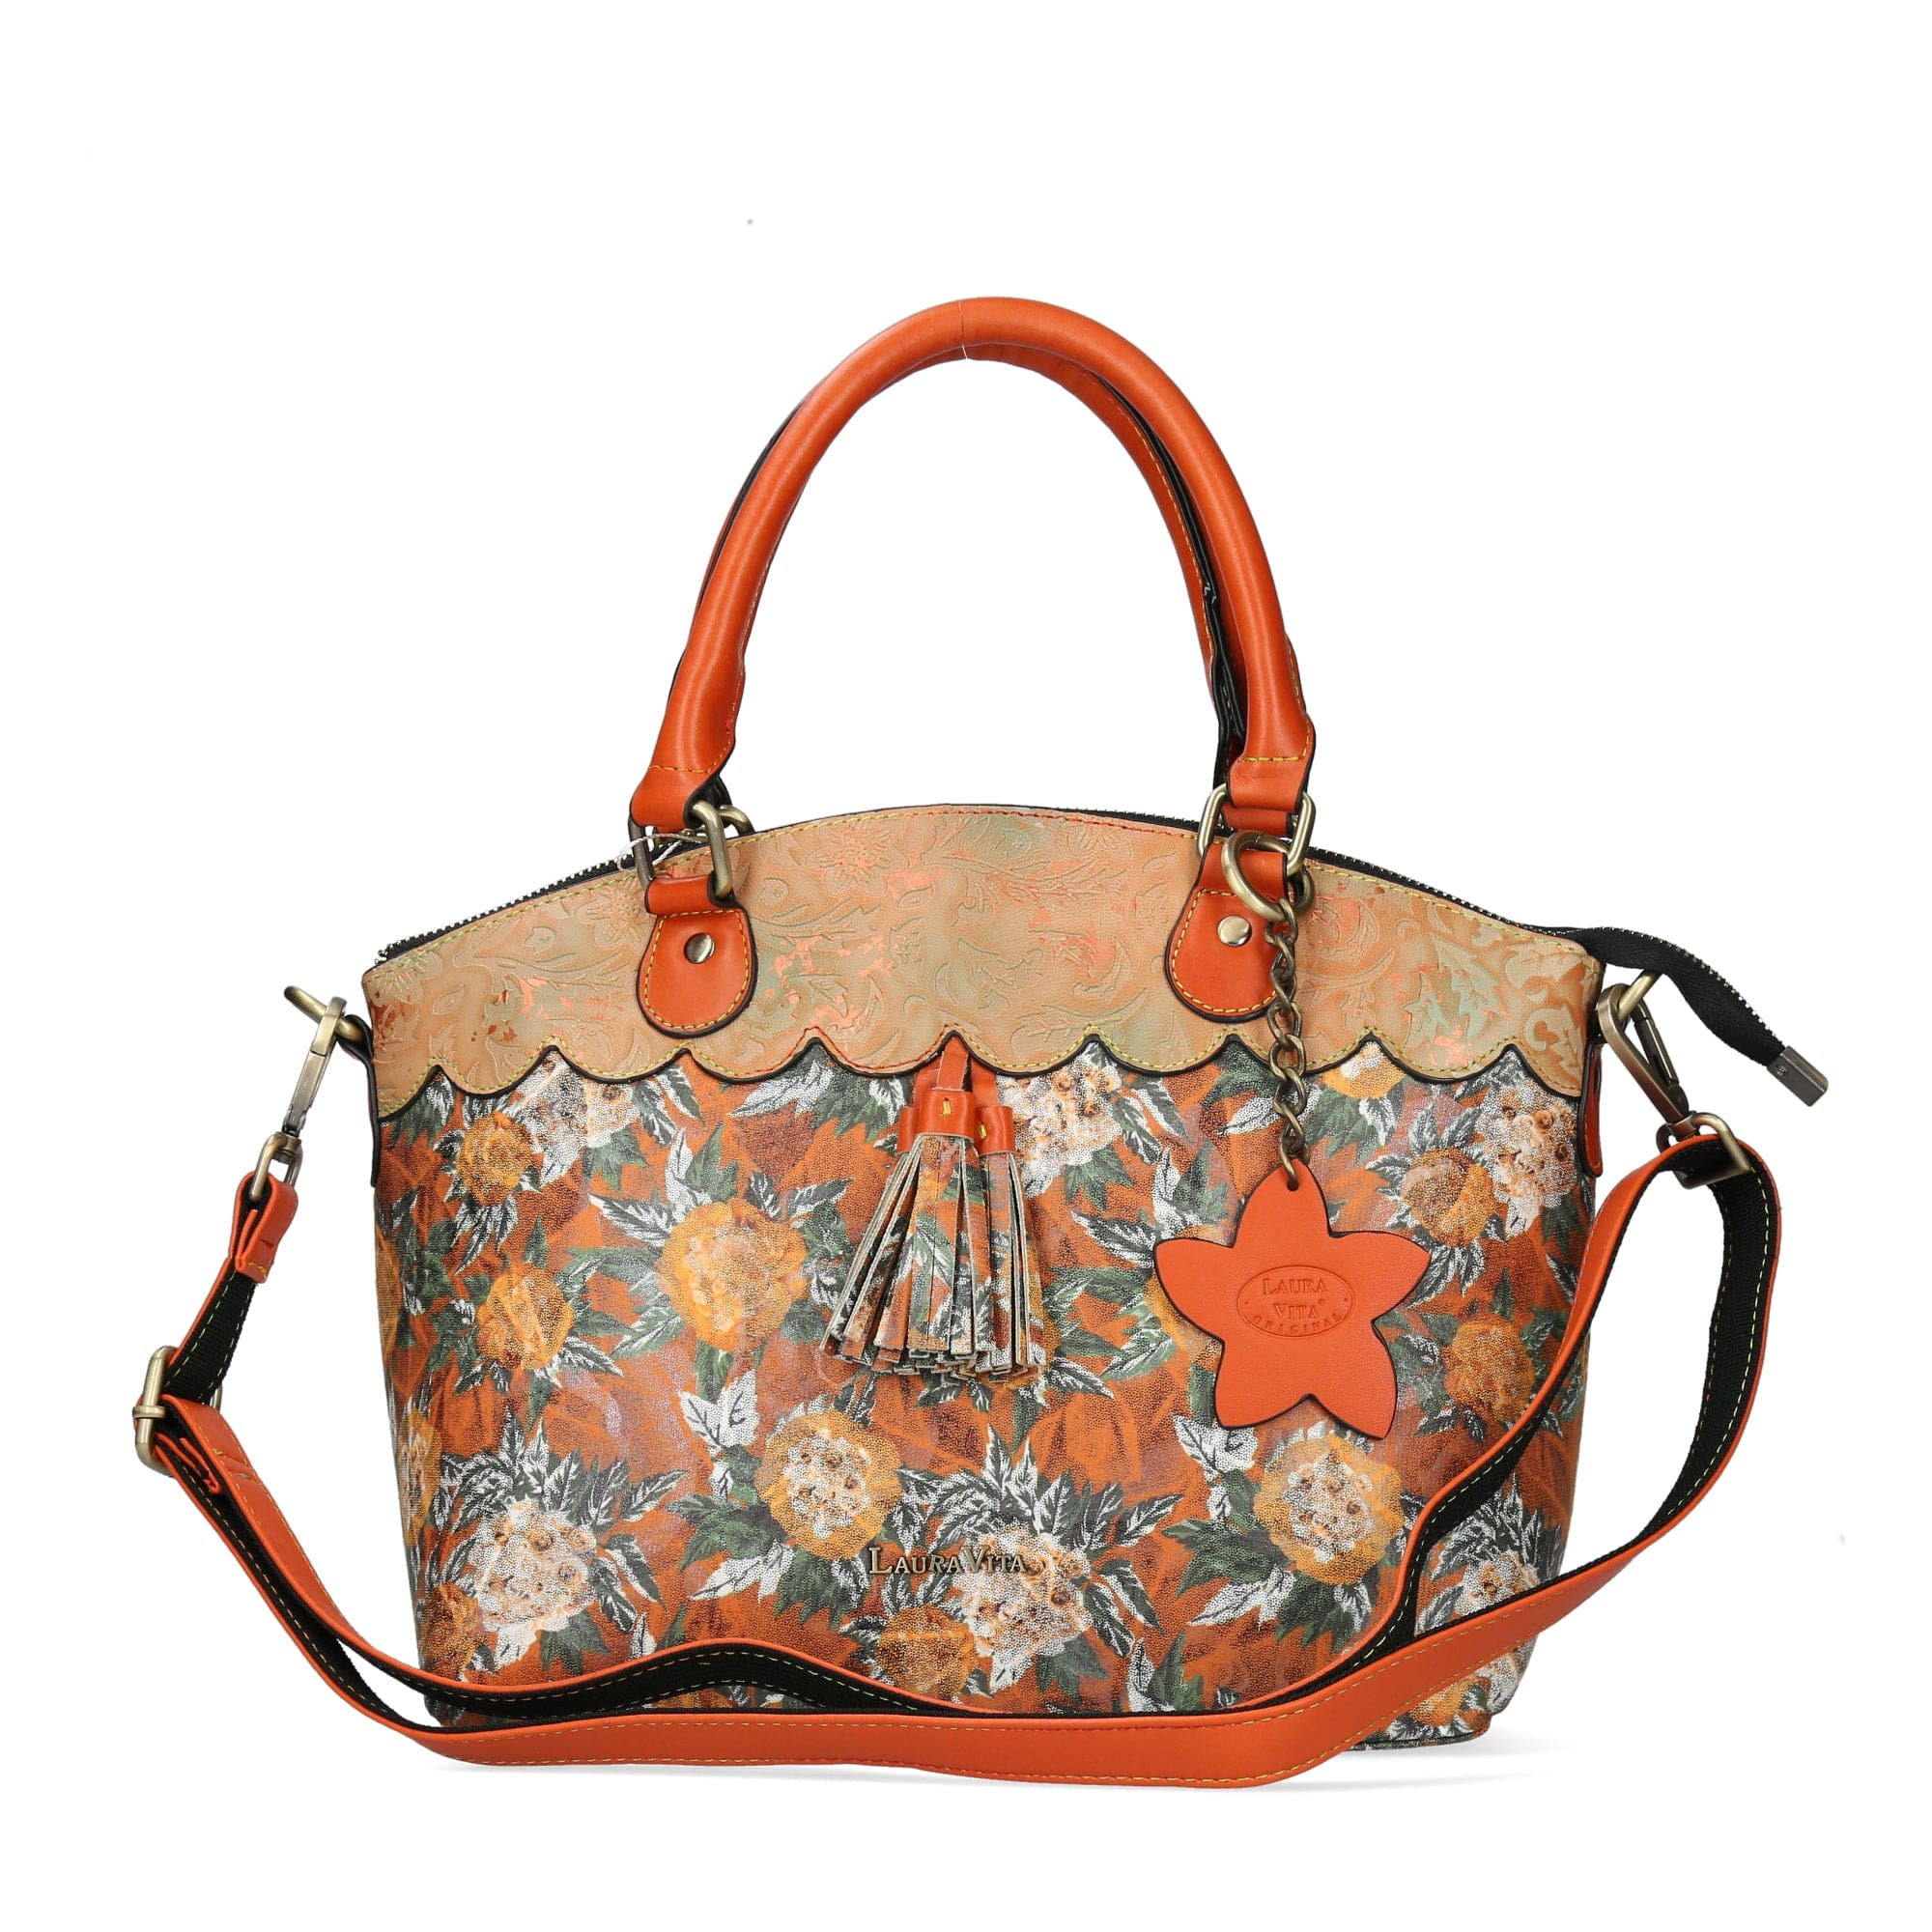 Taschen Handtasche 4736 - Orange - Taschen